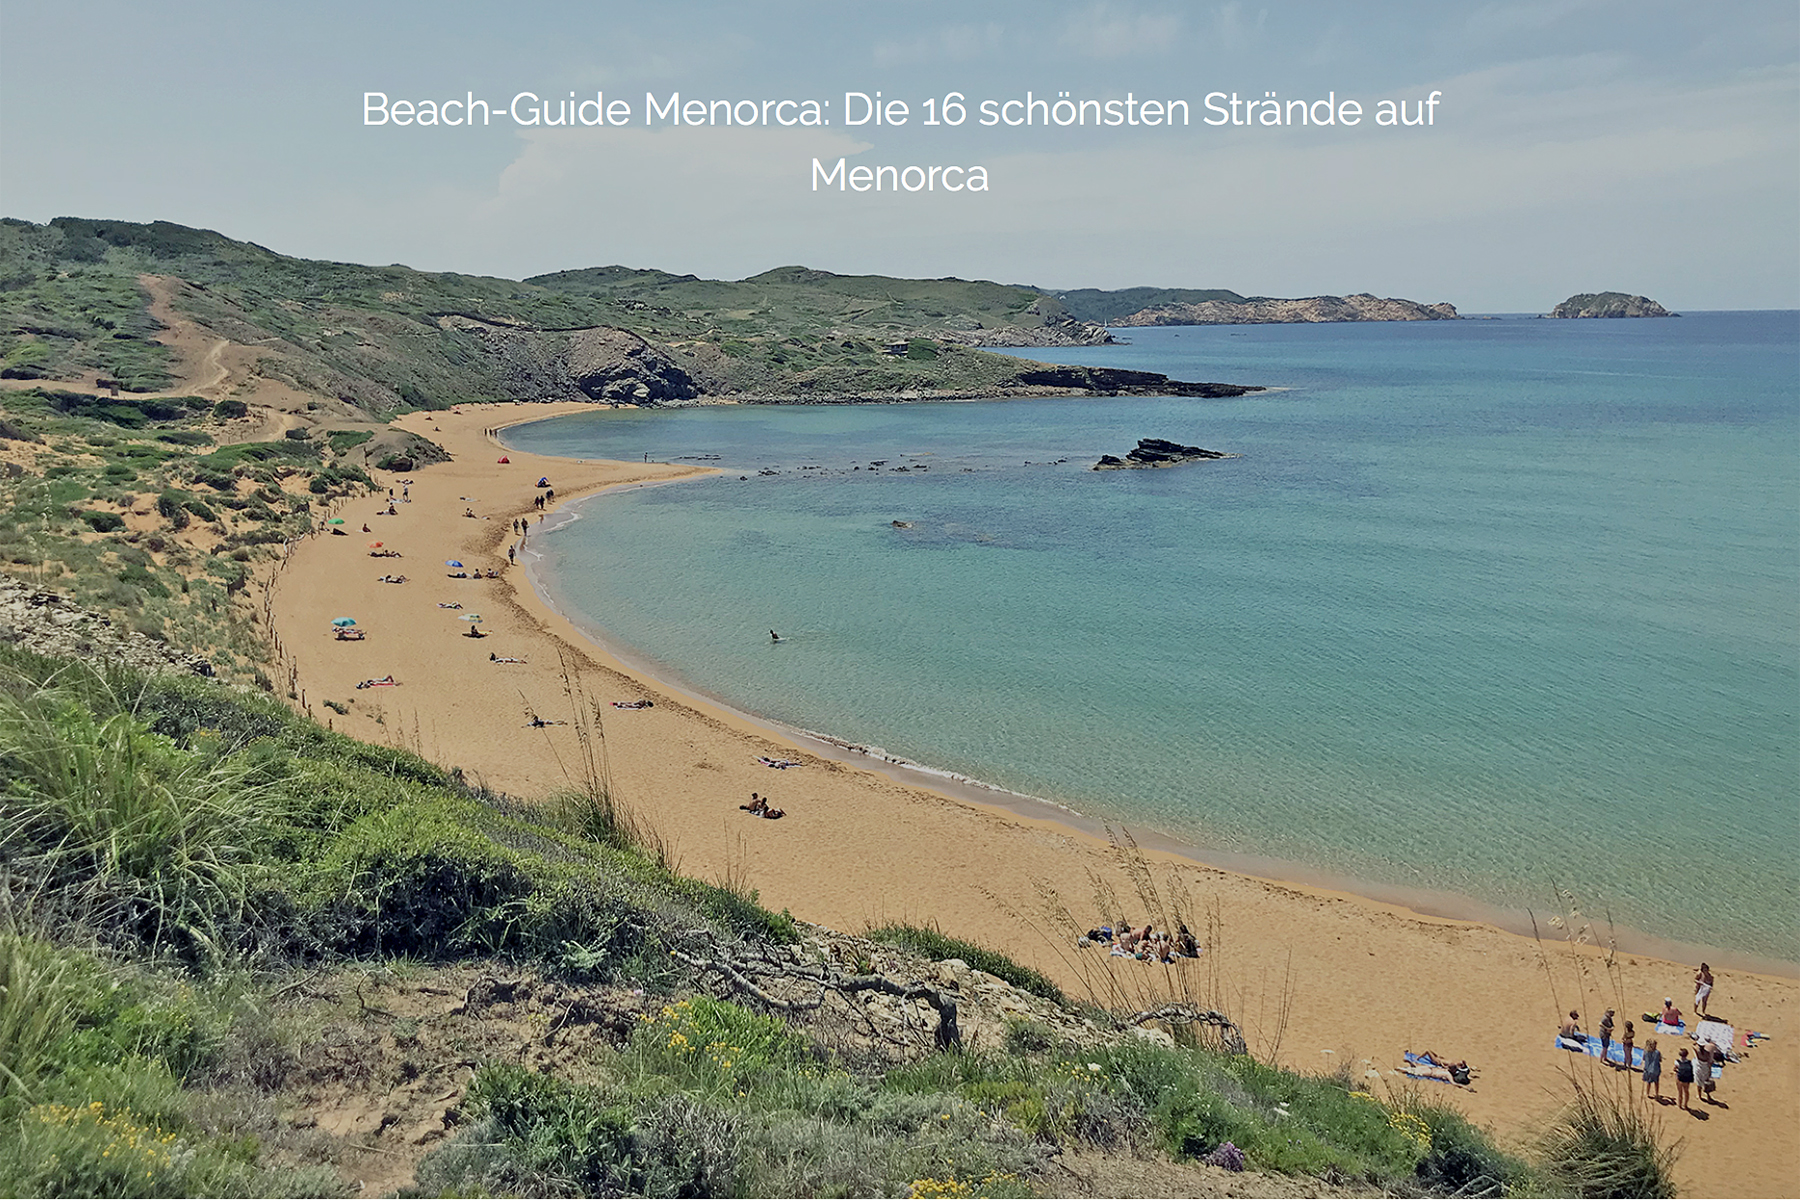 Reise-Special Menorca: Urlaubs-Guide für die nächste Reise nach Menorca 